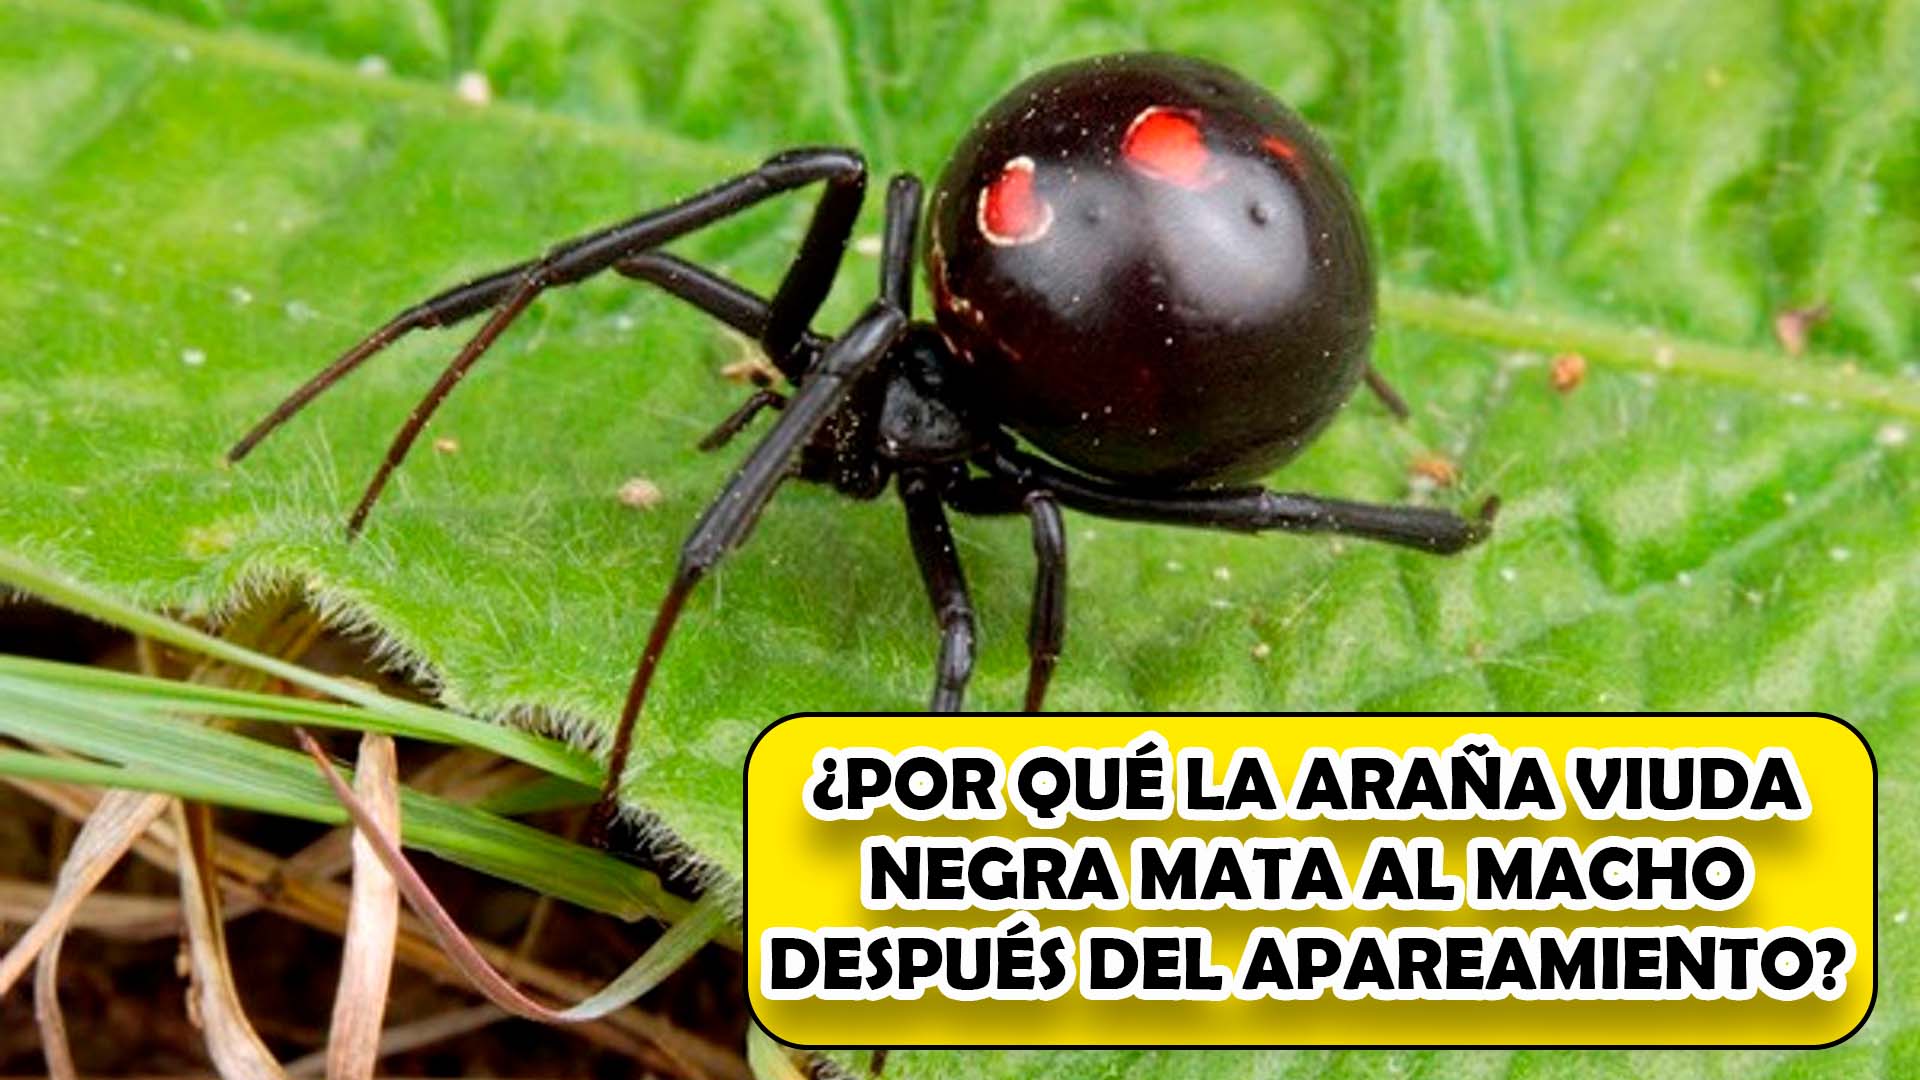 ¿Por qué la araña viuda negra mata al macho después del apareamiento?